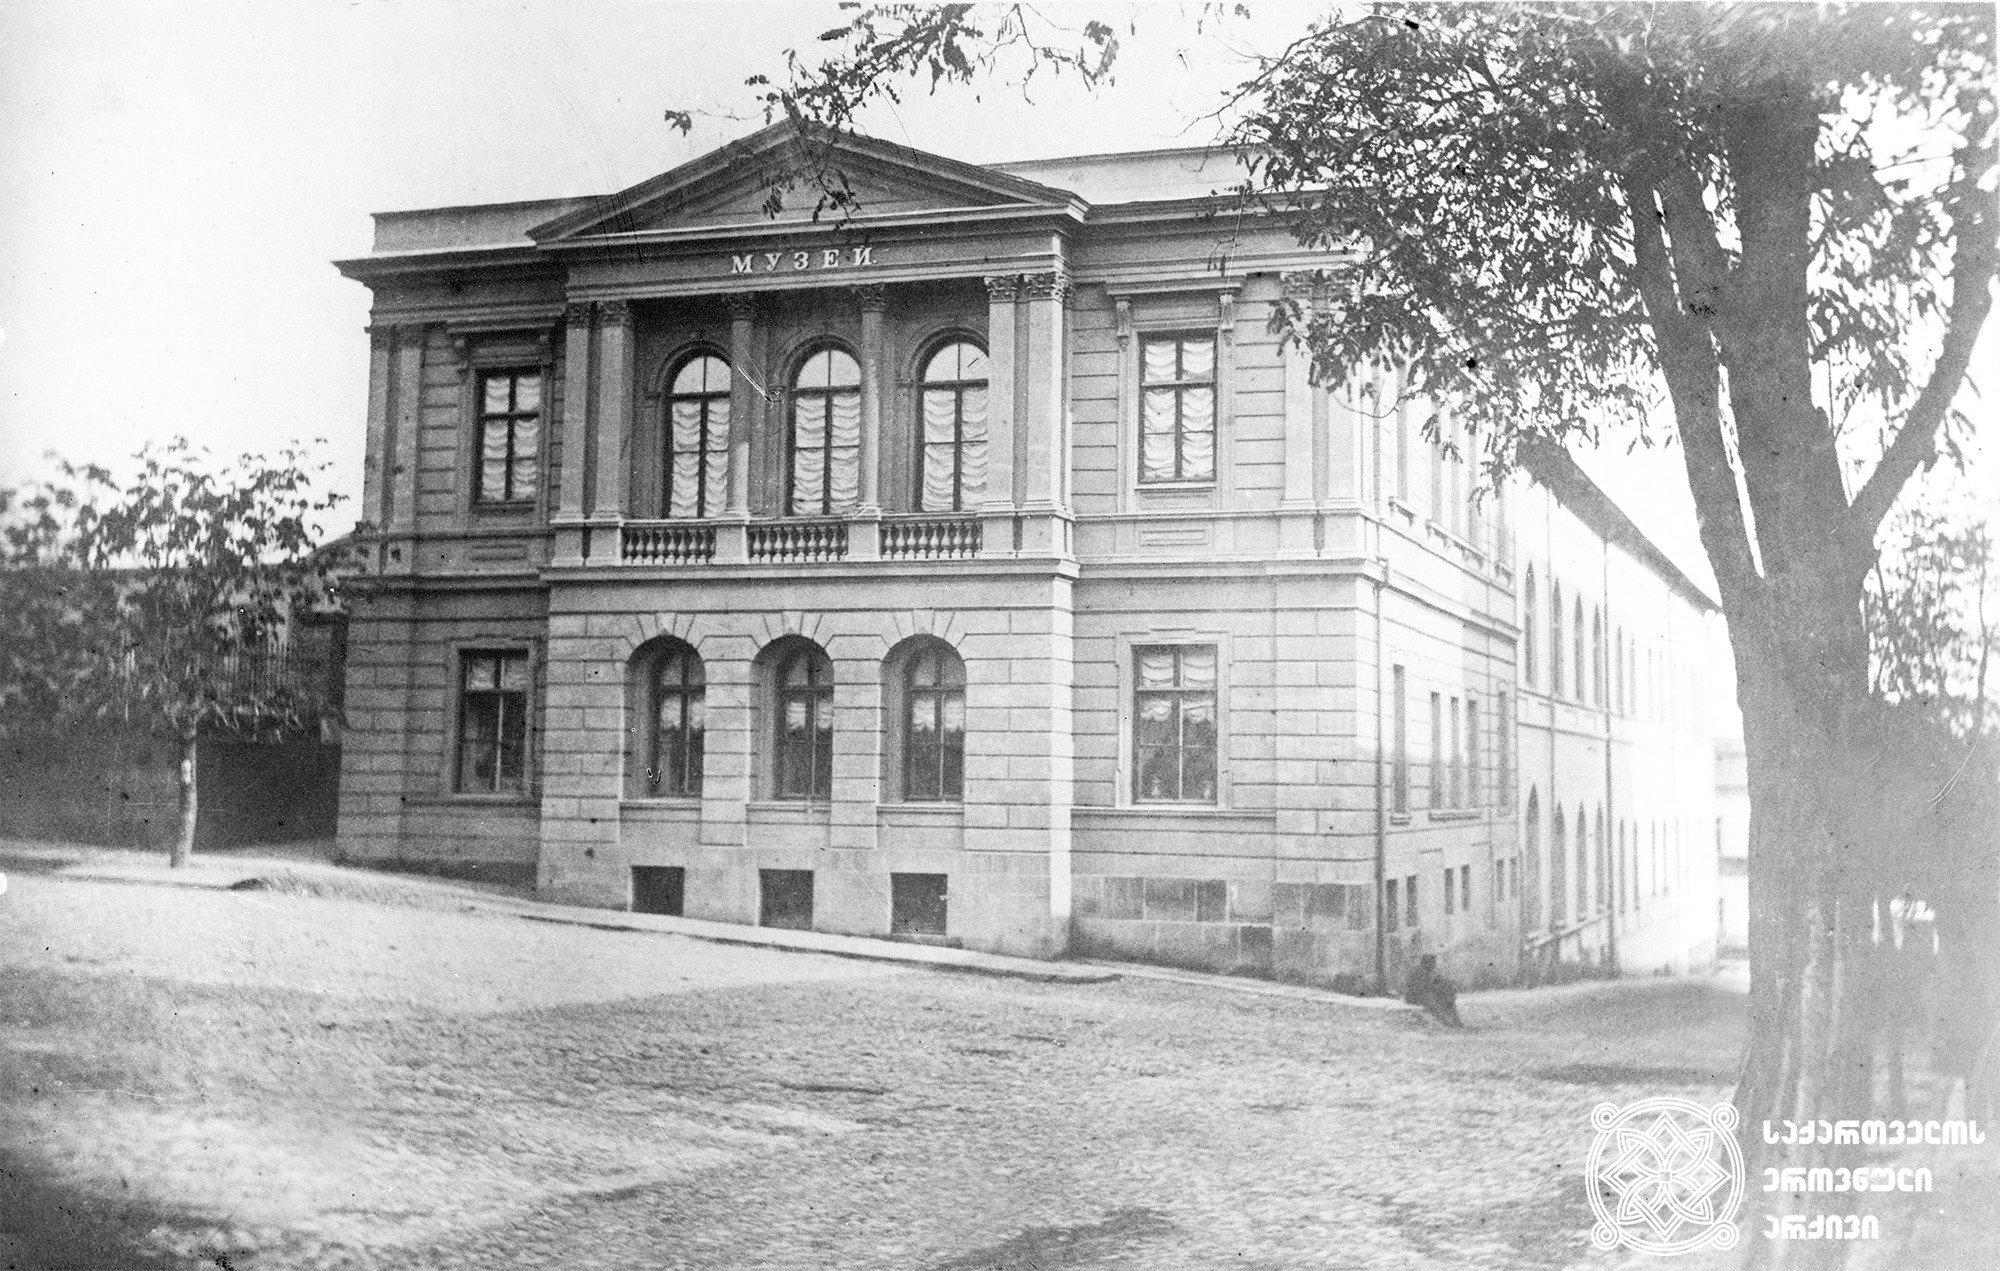 კავკასიის მუზეუმის შენობა, გოლოვინის პროსპექტის, ატამანის ქუჩისა და ნიკოლოზის  (დღევანდელი შოთა რუსთაველის გამზირი, ლადო გუდიაშვილის ქუჩისა და გუდიაშვილის) შესახვევის რკალი. <br>
არქიტექტორები: პირველი სართული - ალბერტ ზალცმანი (1868-1869). <br>
მეორე სართული - ლეოპოლდ ბილფელდი (1879-1880).